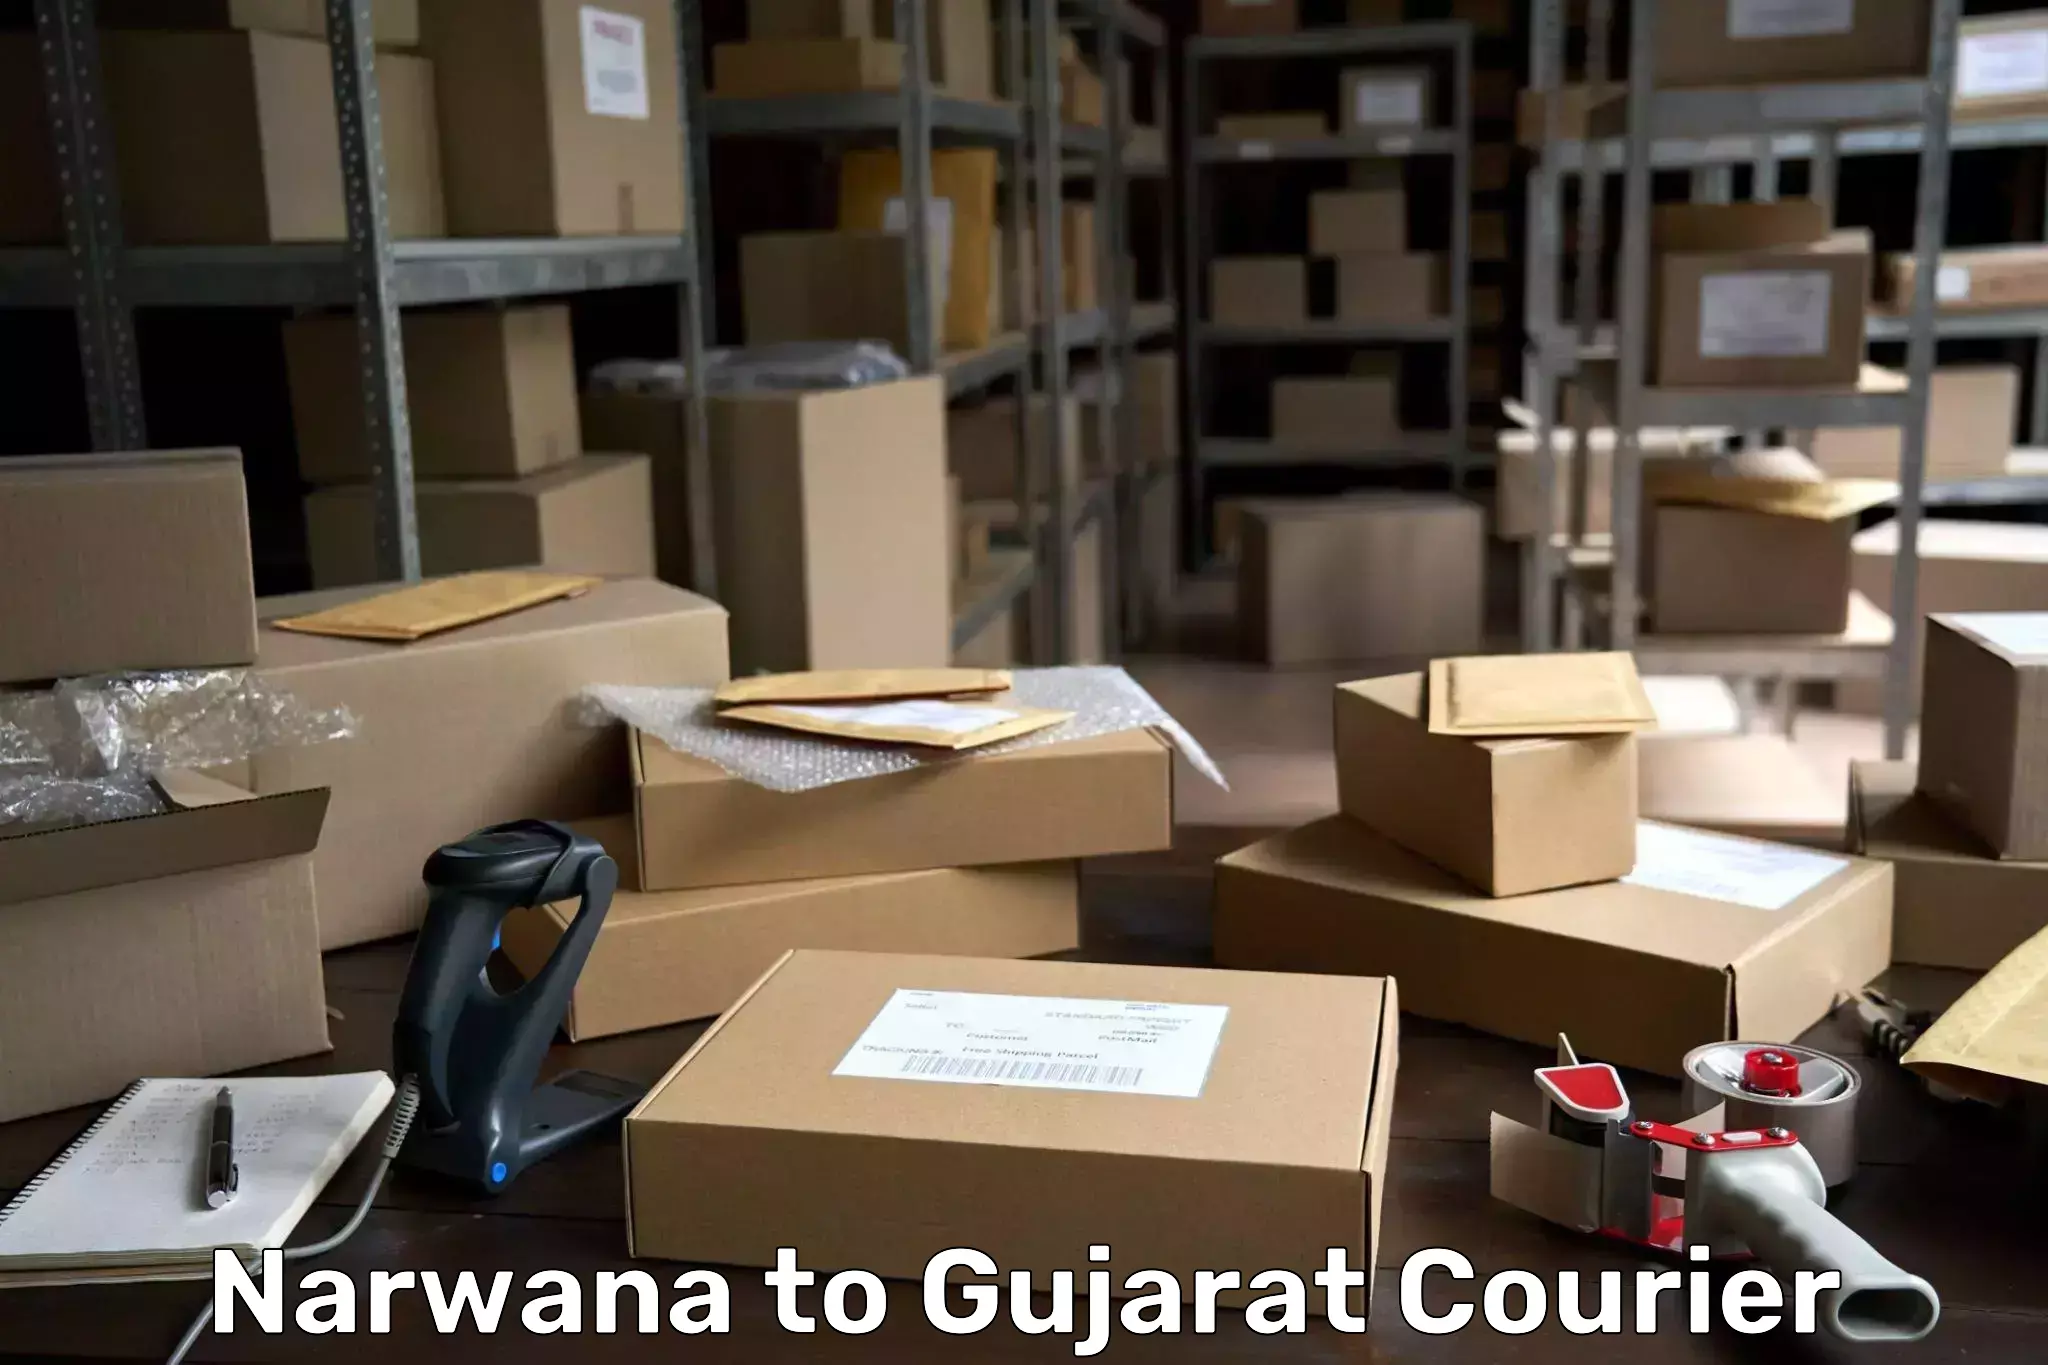 Express logistics providers Narwana to Gujarat